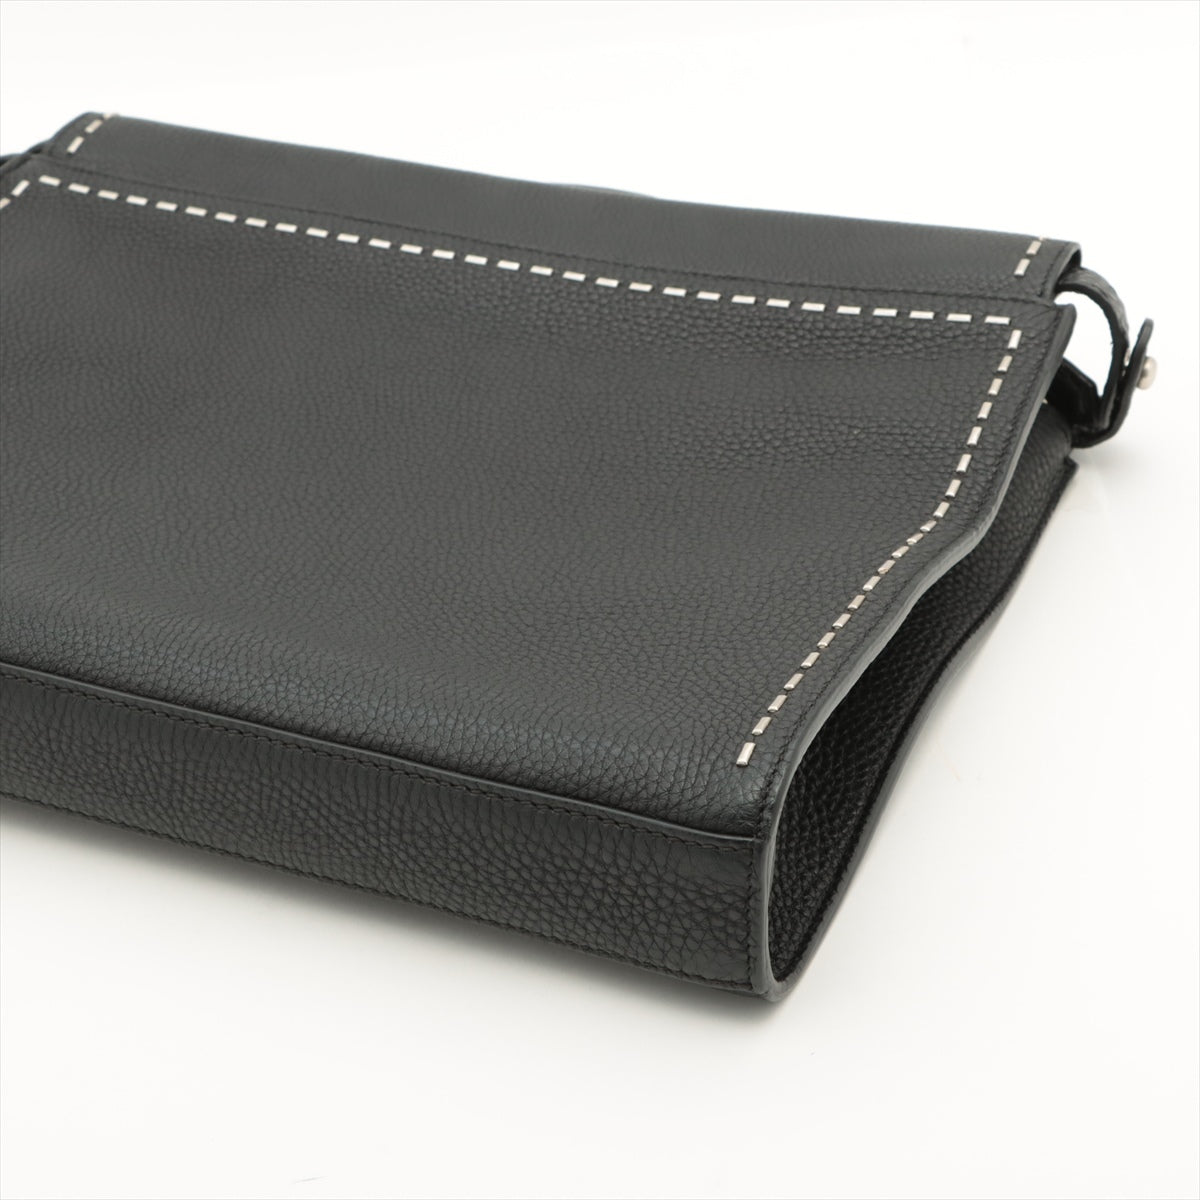 Fendi Selleria Peekaboo fit Leather 2way handbag Black 7VA406